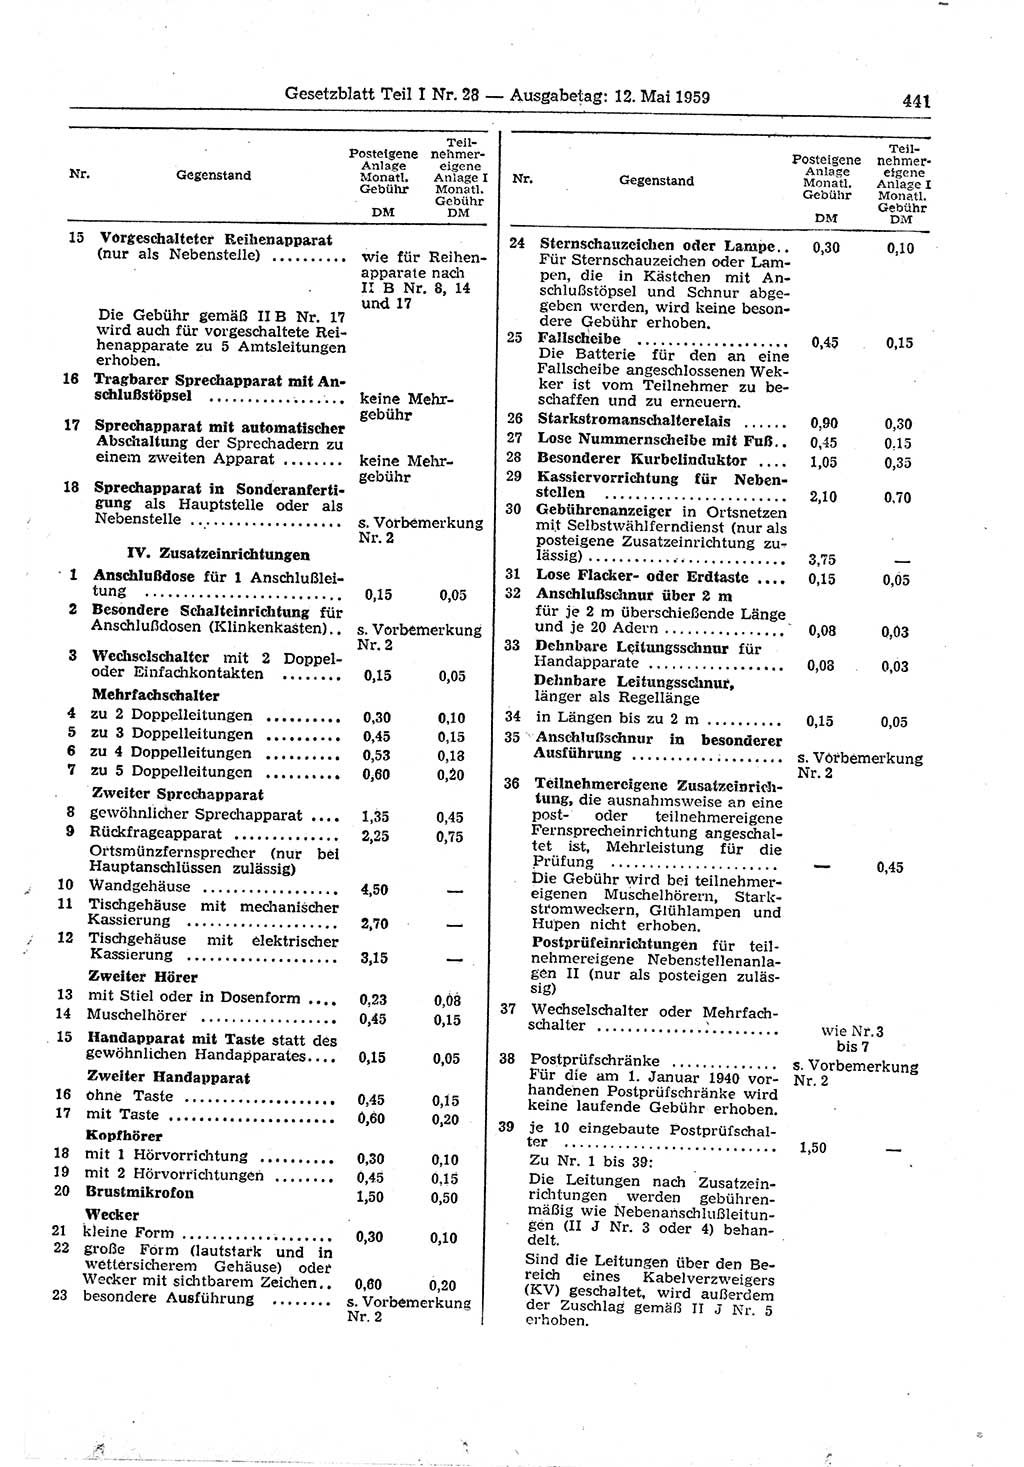 Gesetzblatt (GBl.) der Deutschen Demokratischen Republik (DDR) Teil Ⅰ 1959, Seite 441 (GBl. DDR Ⅰ 1959, S. 441)